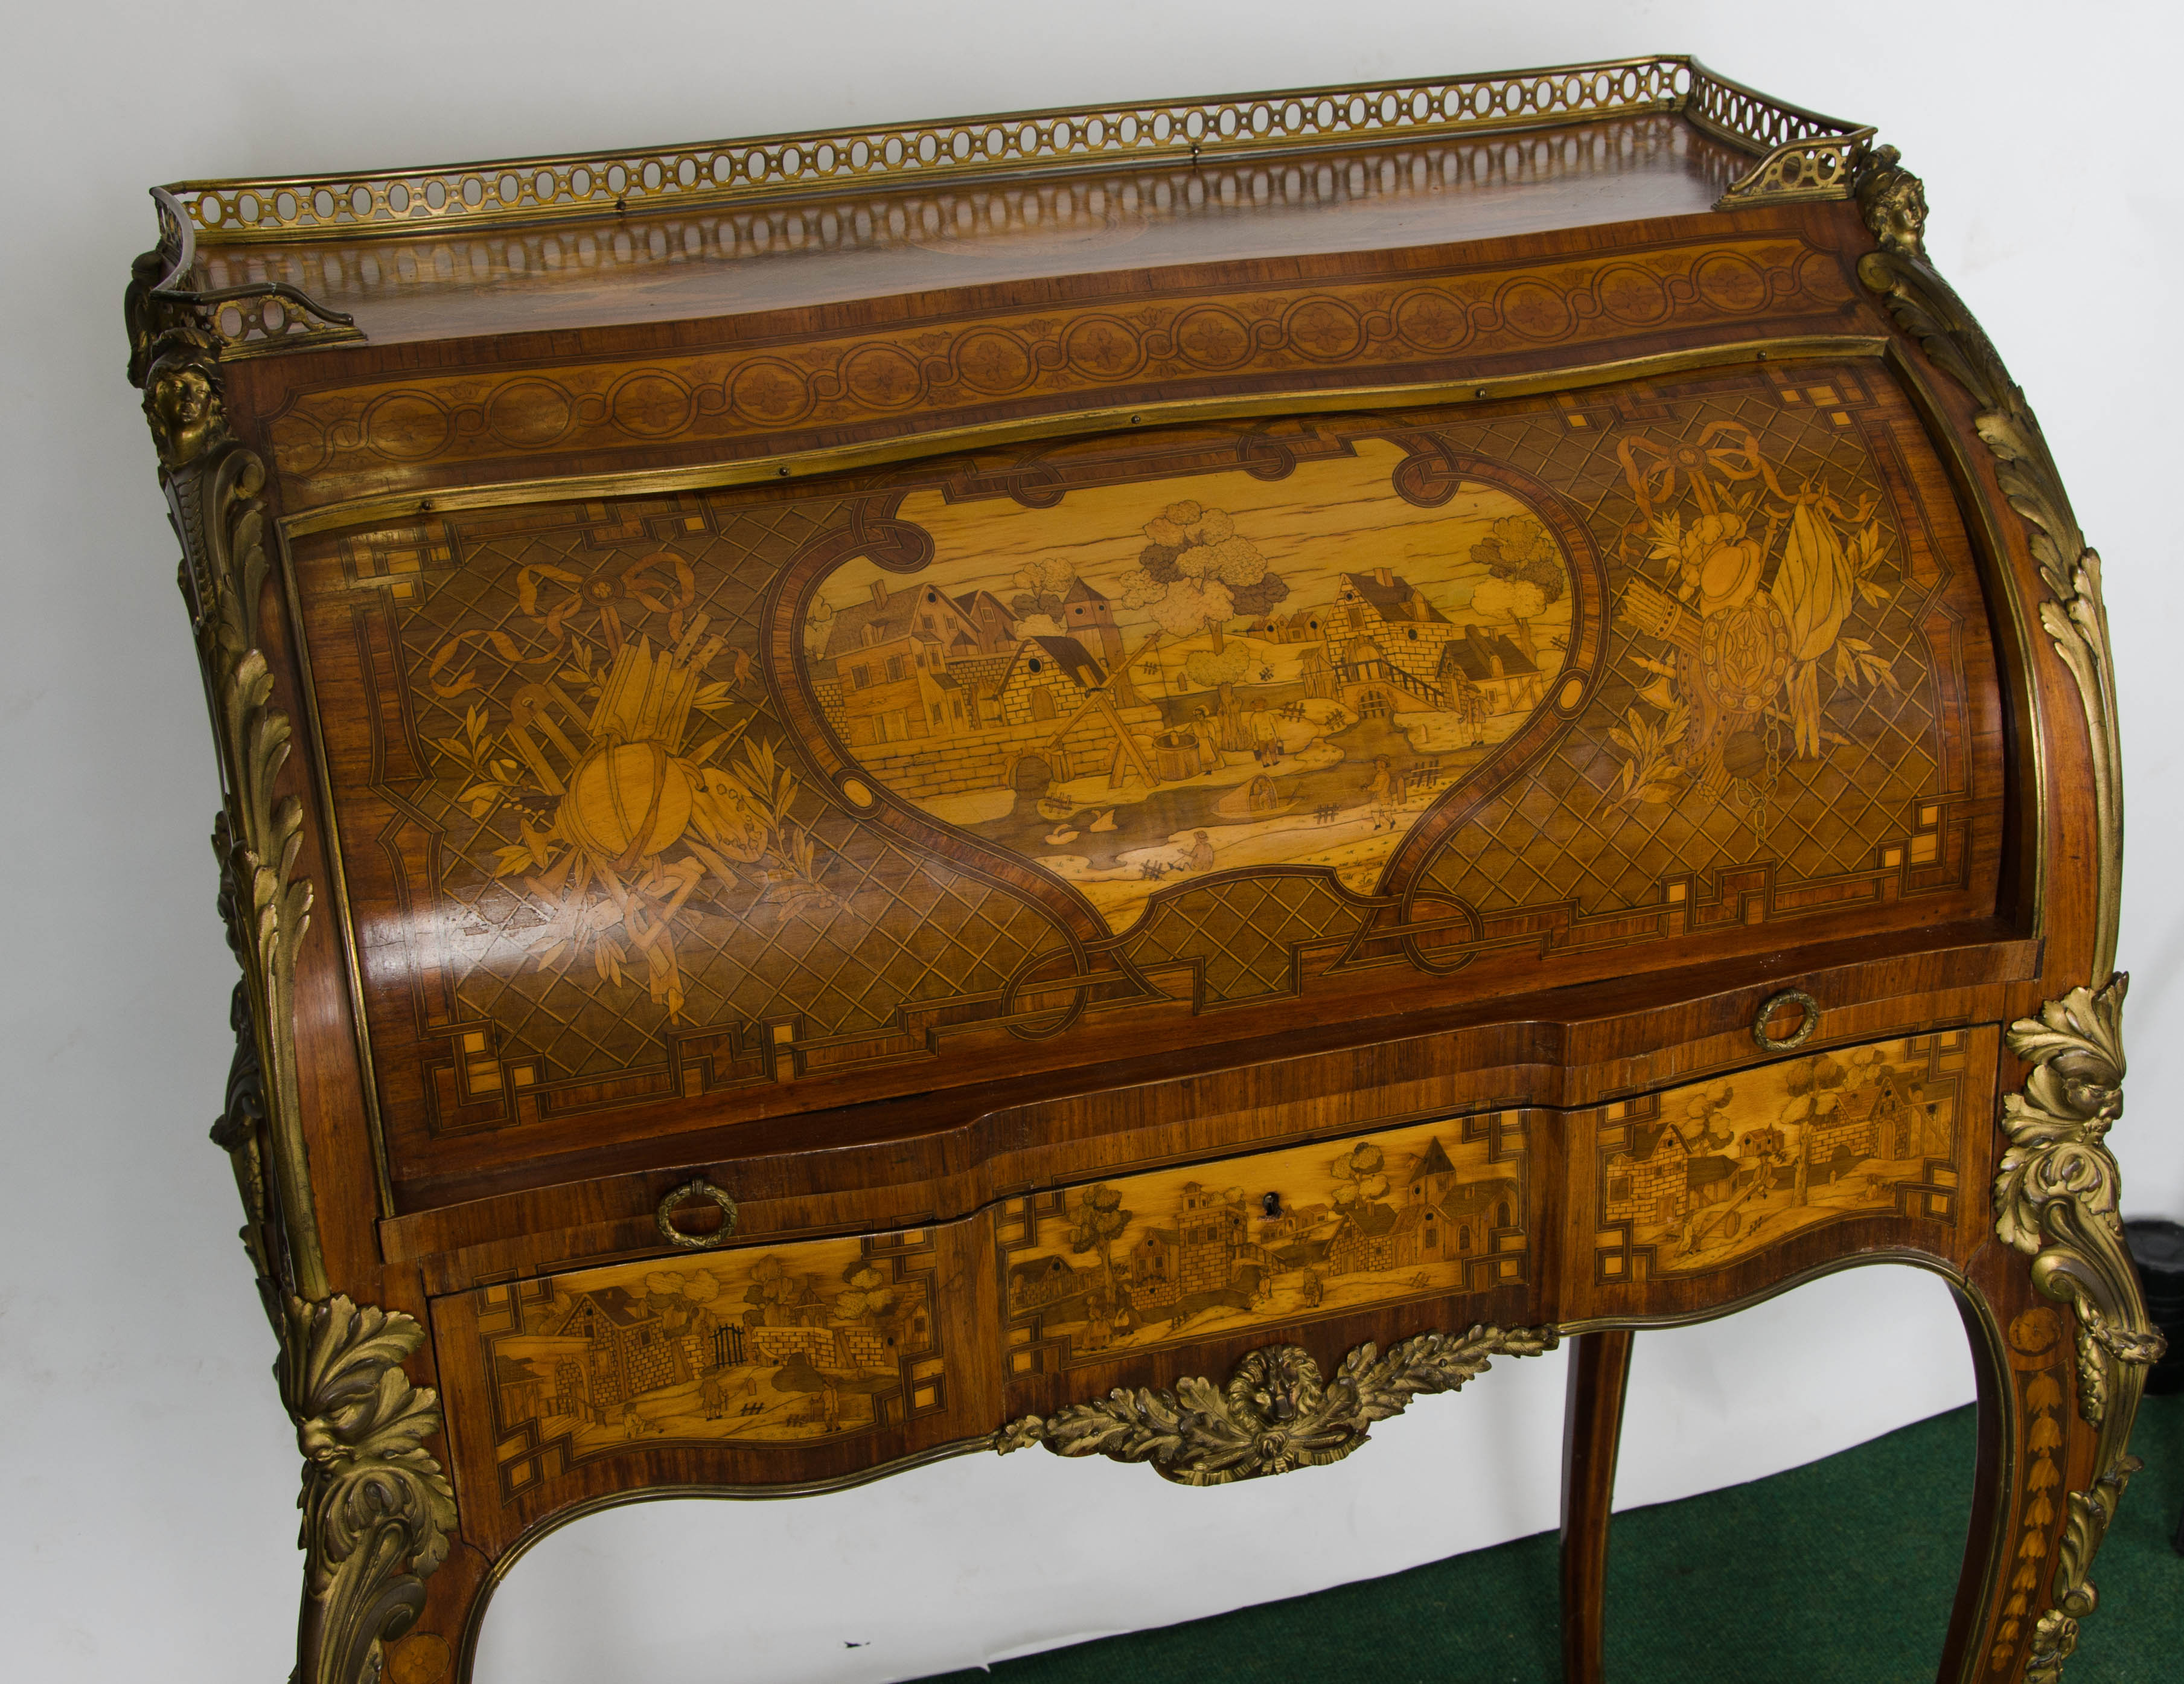 Eine feine Qualität 19. Jahrhundert Louis XV-Stil Marquetry eingelegt bureau de dame, mit wunderbar detaillierten Szenen, um die Schublade Fronten und Zylinder, die Seiten und die Rückseite mit foliate Dekoration um Urnen und Musikinstrumente. Eine